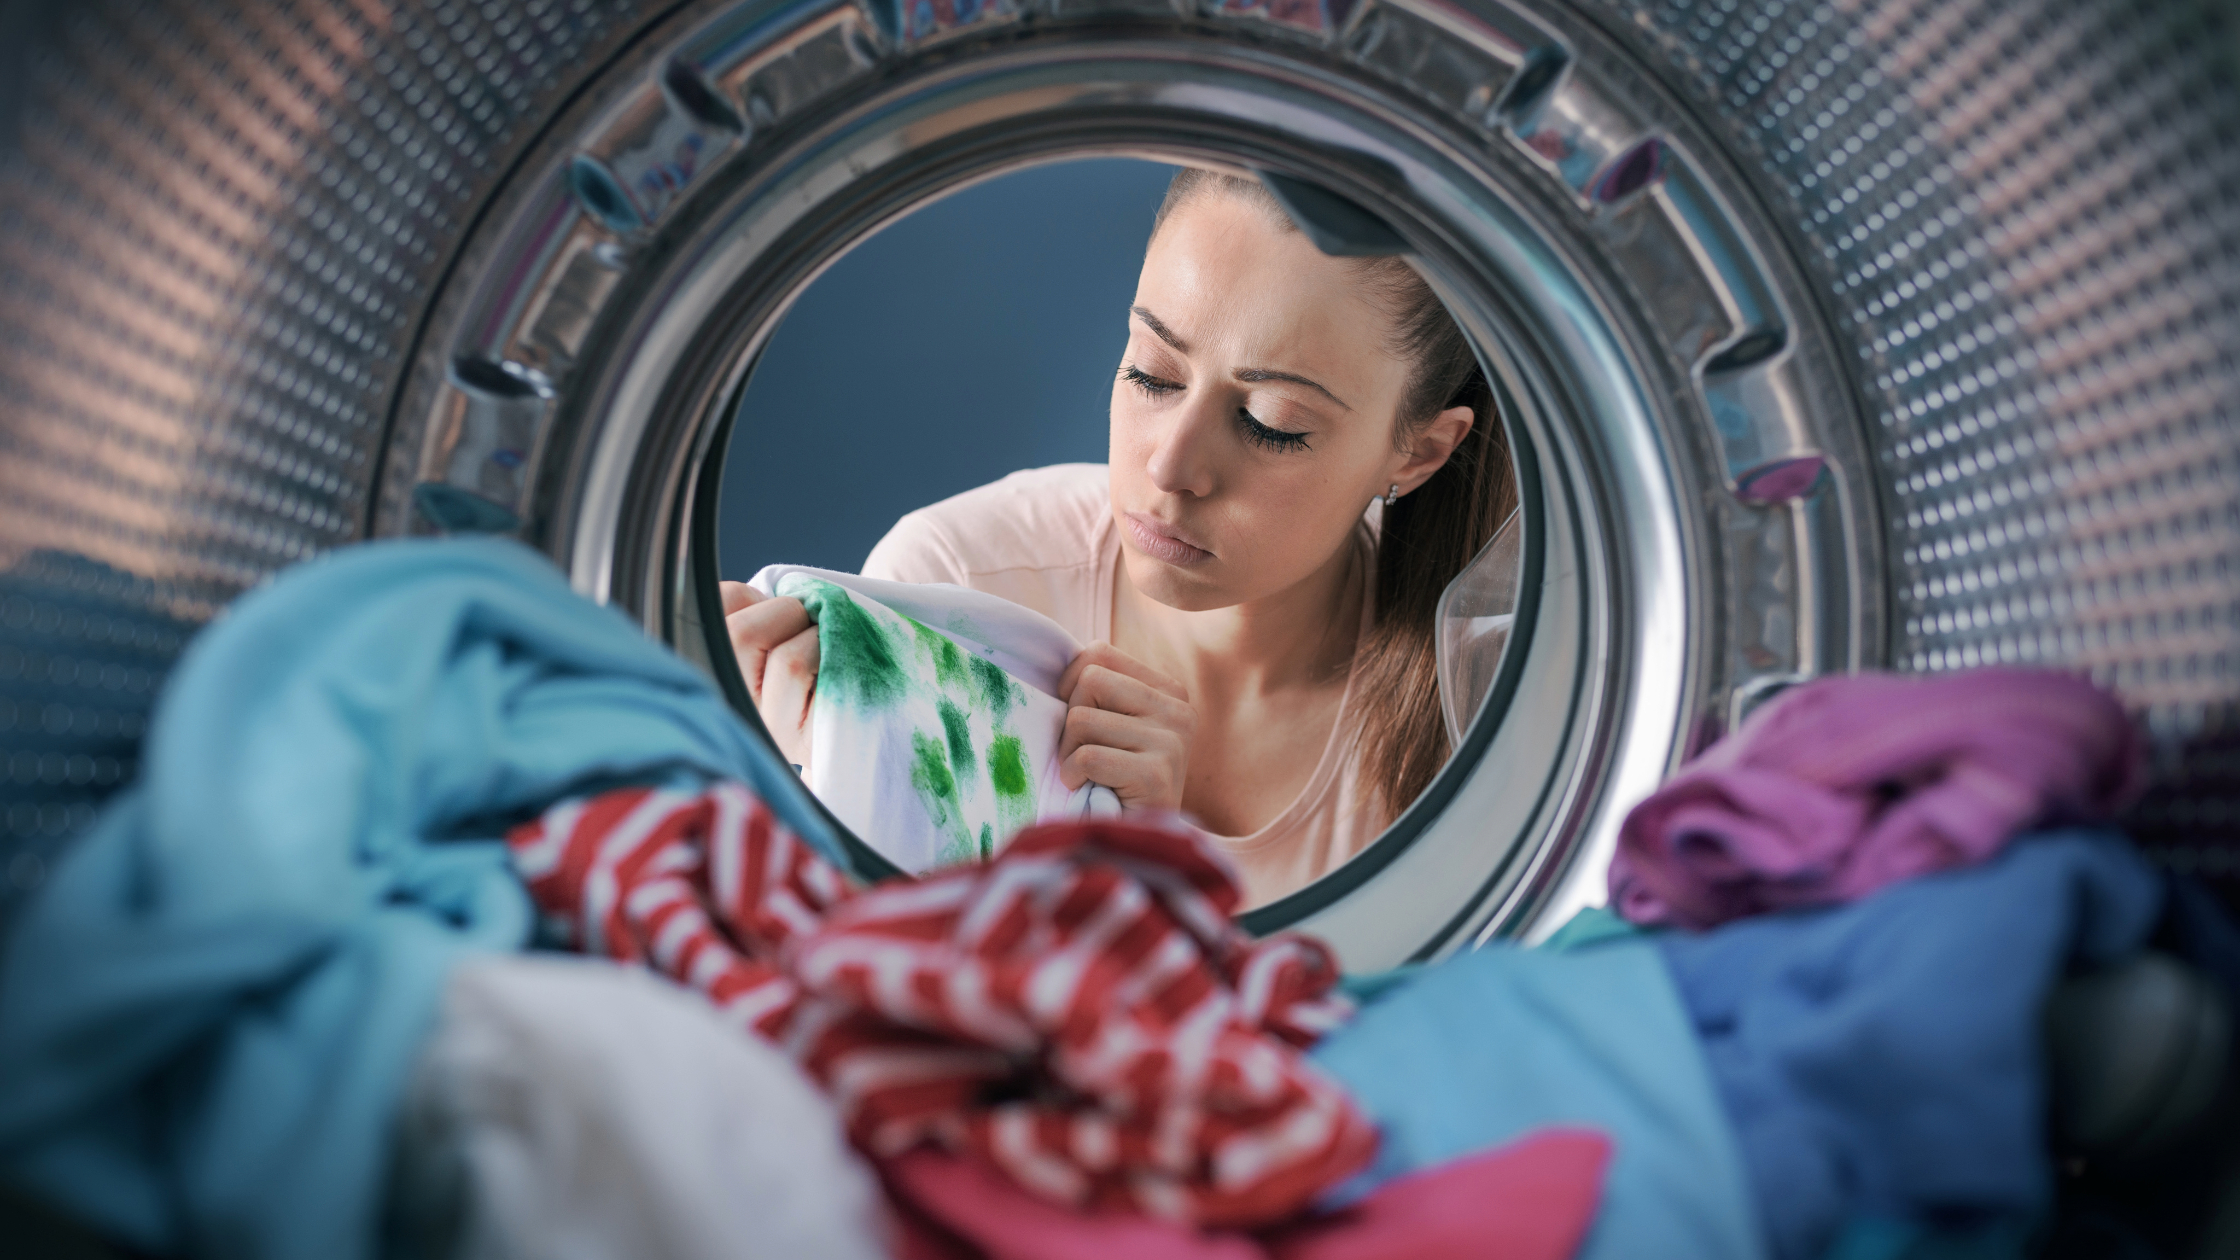 visão de dentro de uma máquina lava roupas de uma mulher pensando em como lavar pano de prato sujo